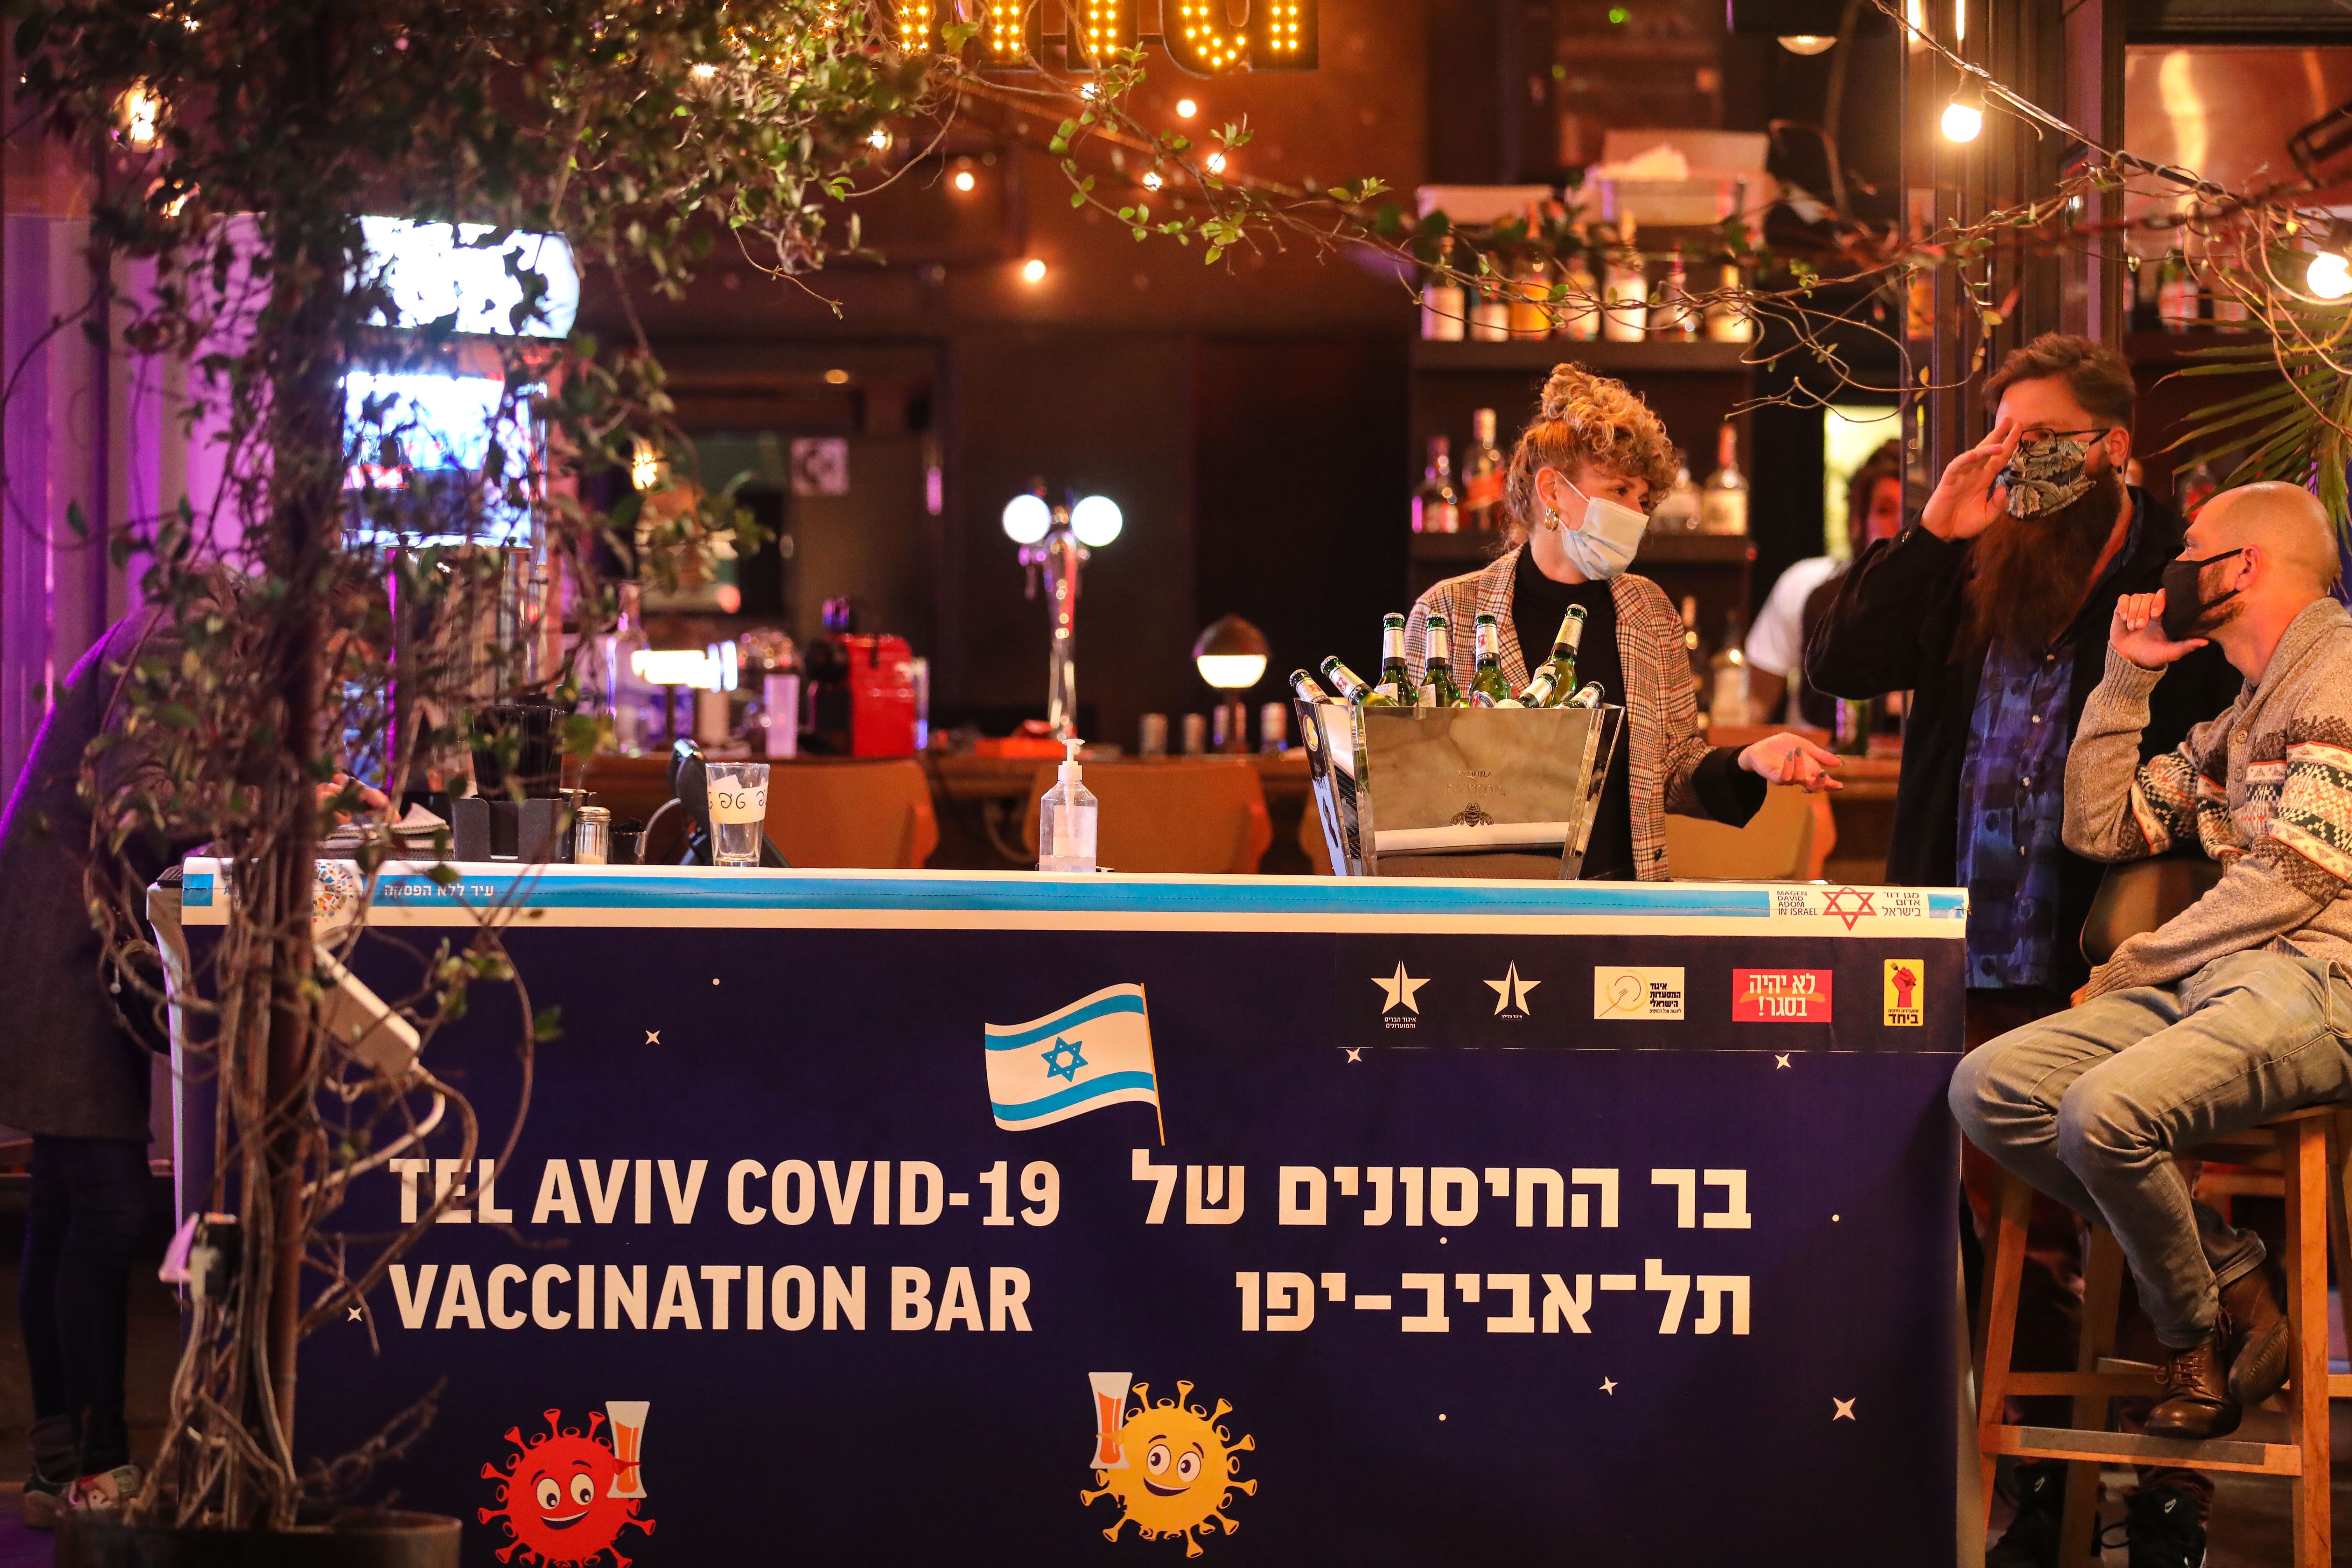 В Израиле предлагают бесплатный "дринк" тем, кто вакцинируется против COVID-19 в баре